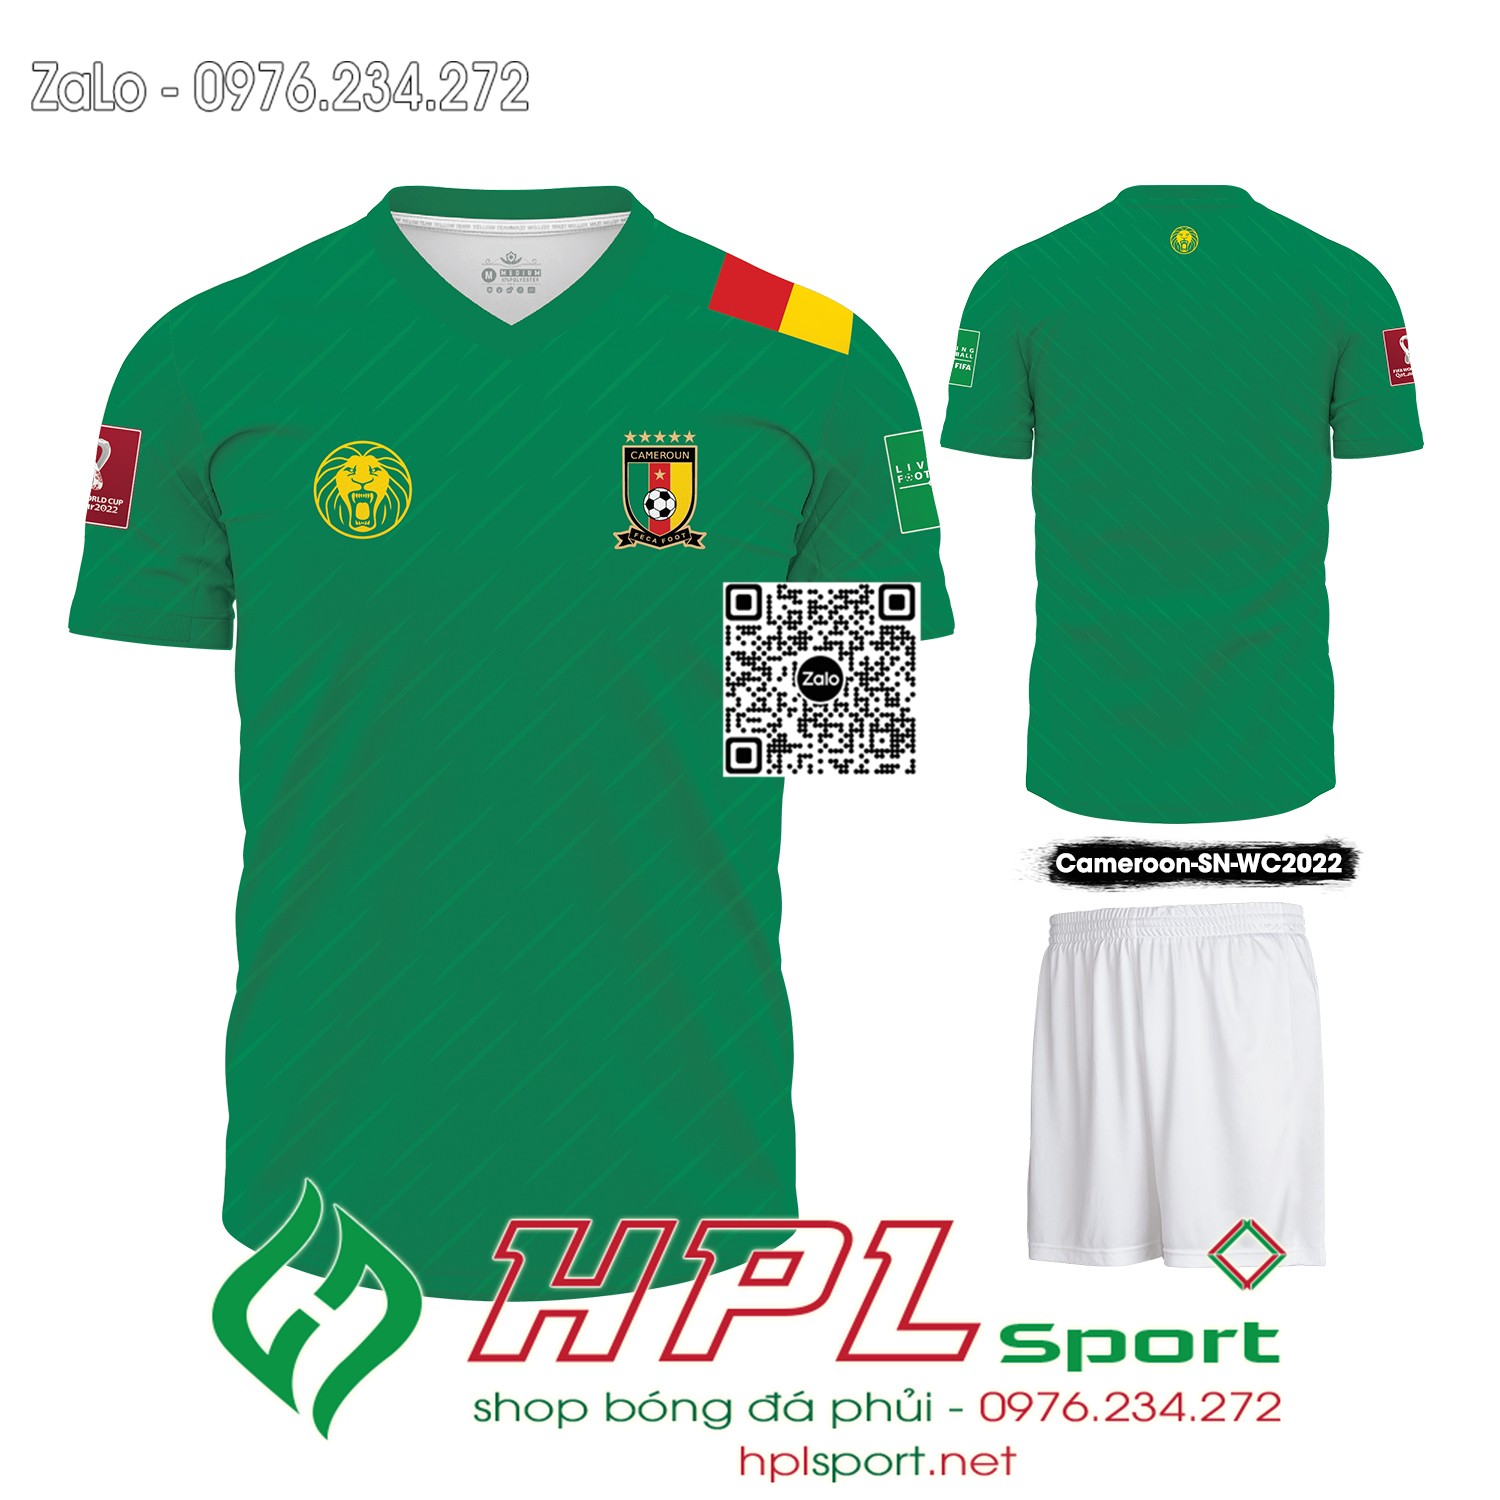 Mẫu áo đá banh đội tuyển Cameroon sân nhà màu xanh két